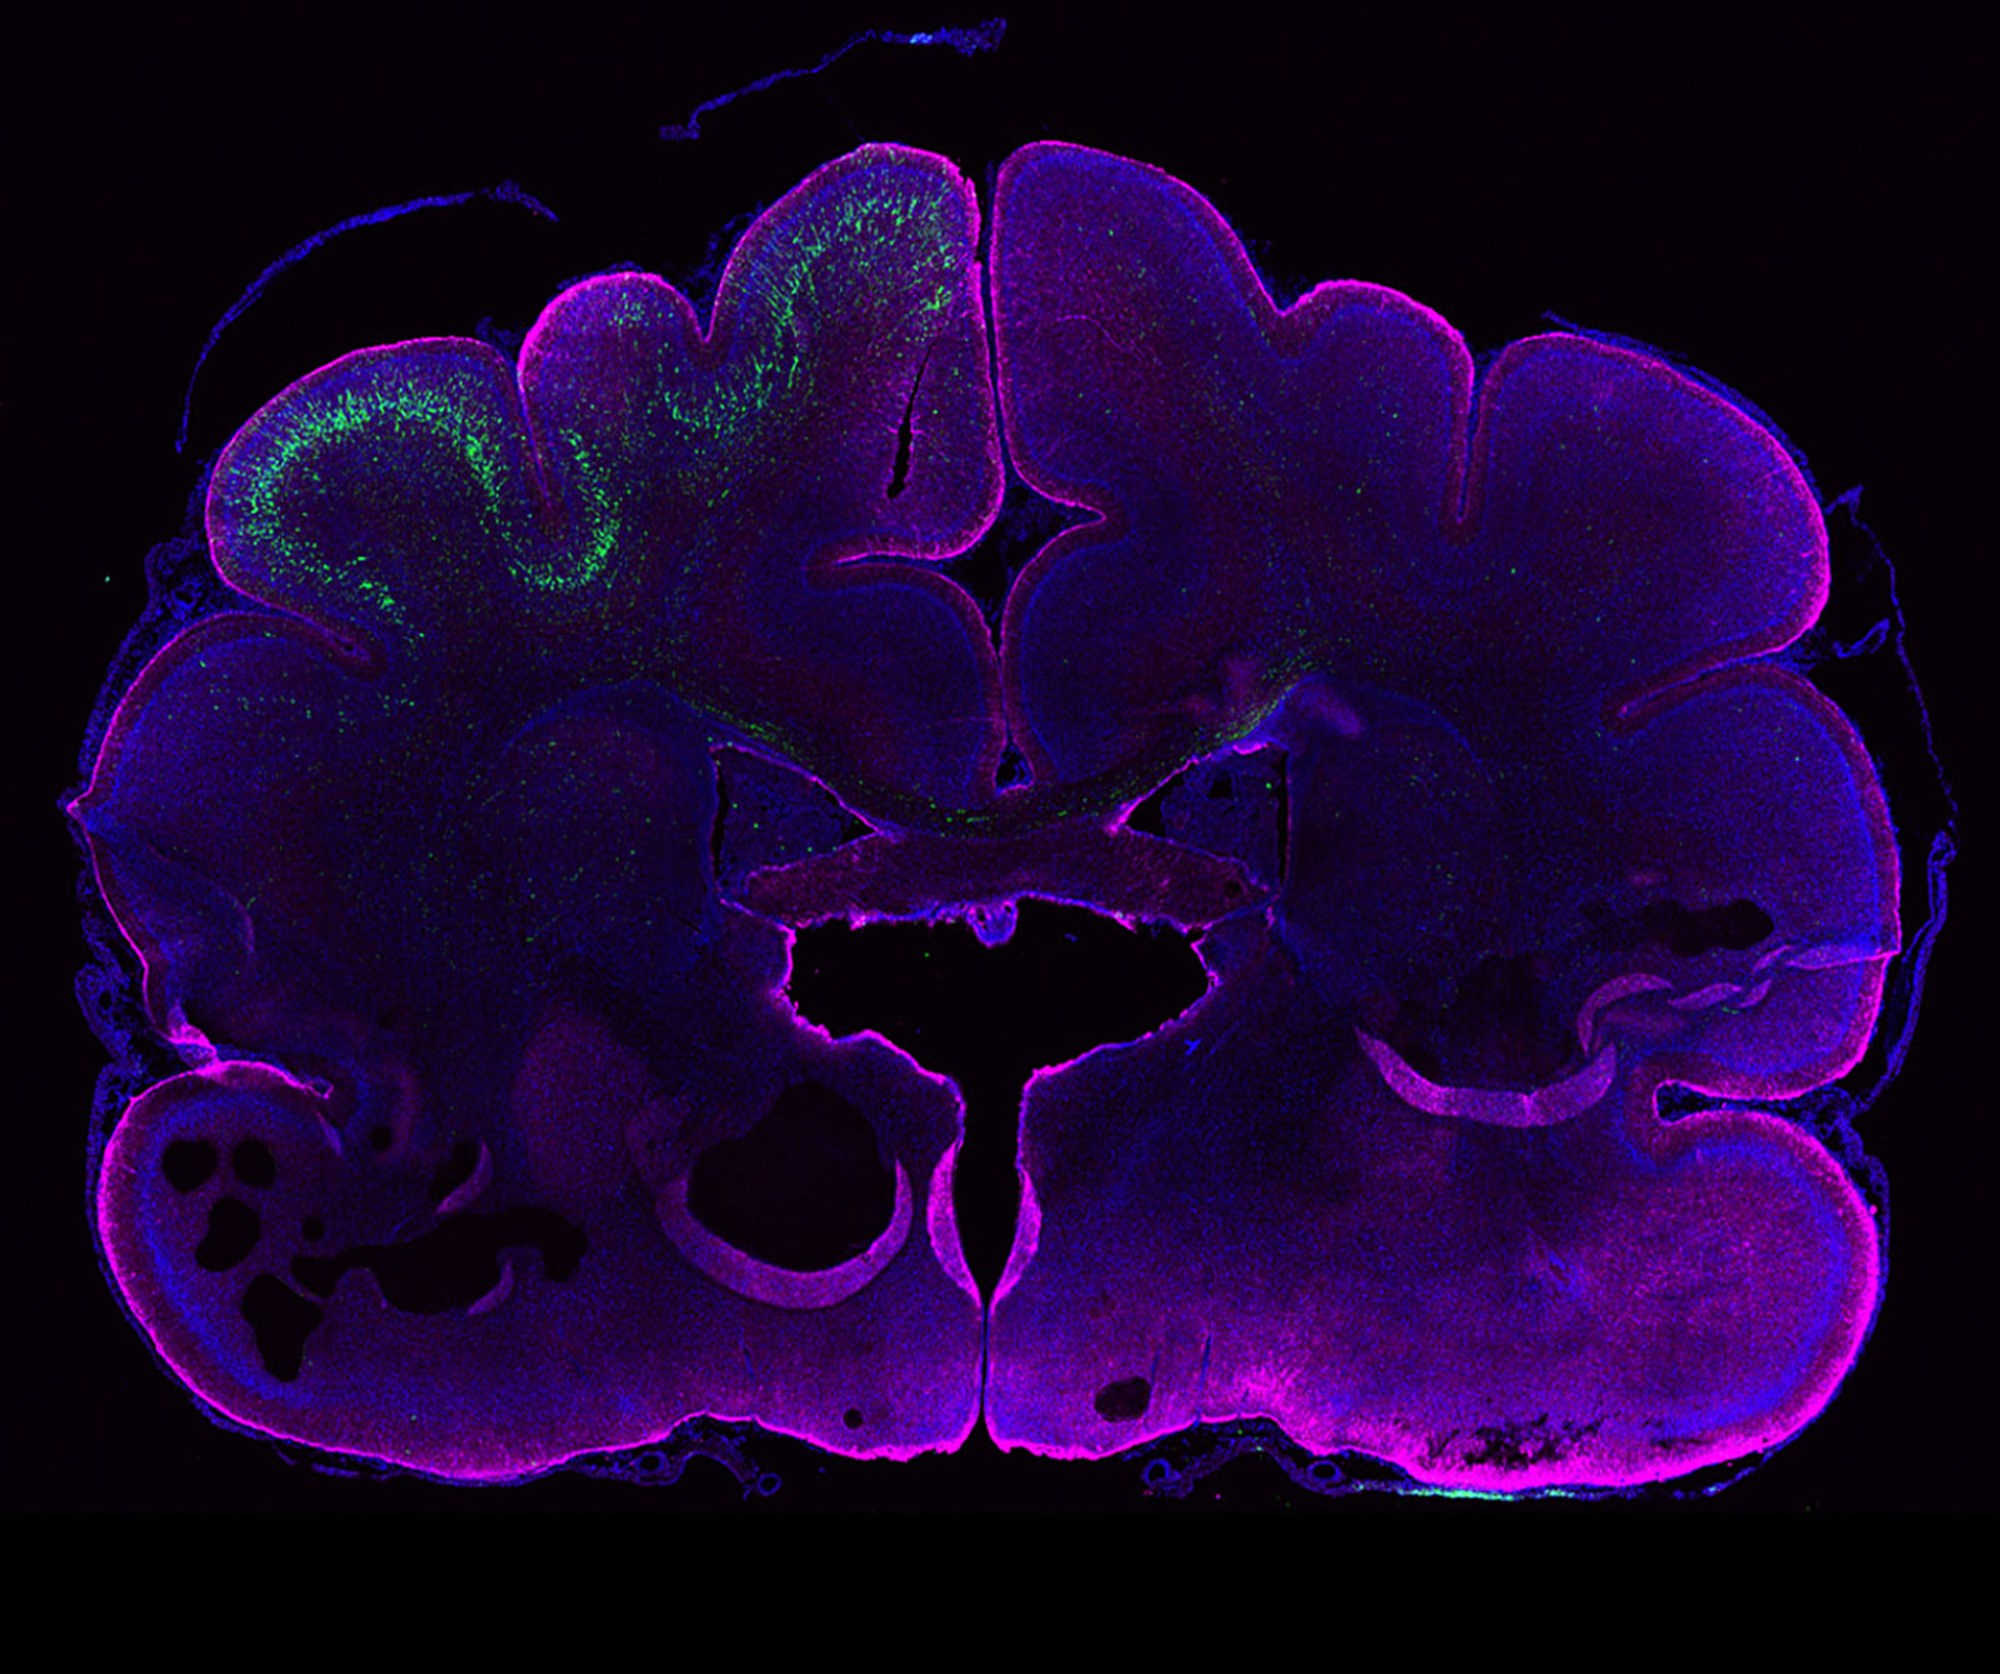 Menschliches Gen vergrößert im Experiment Gehirn von Frettchen